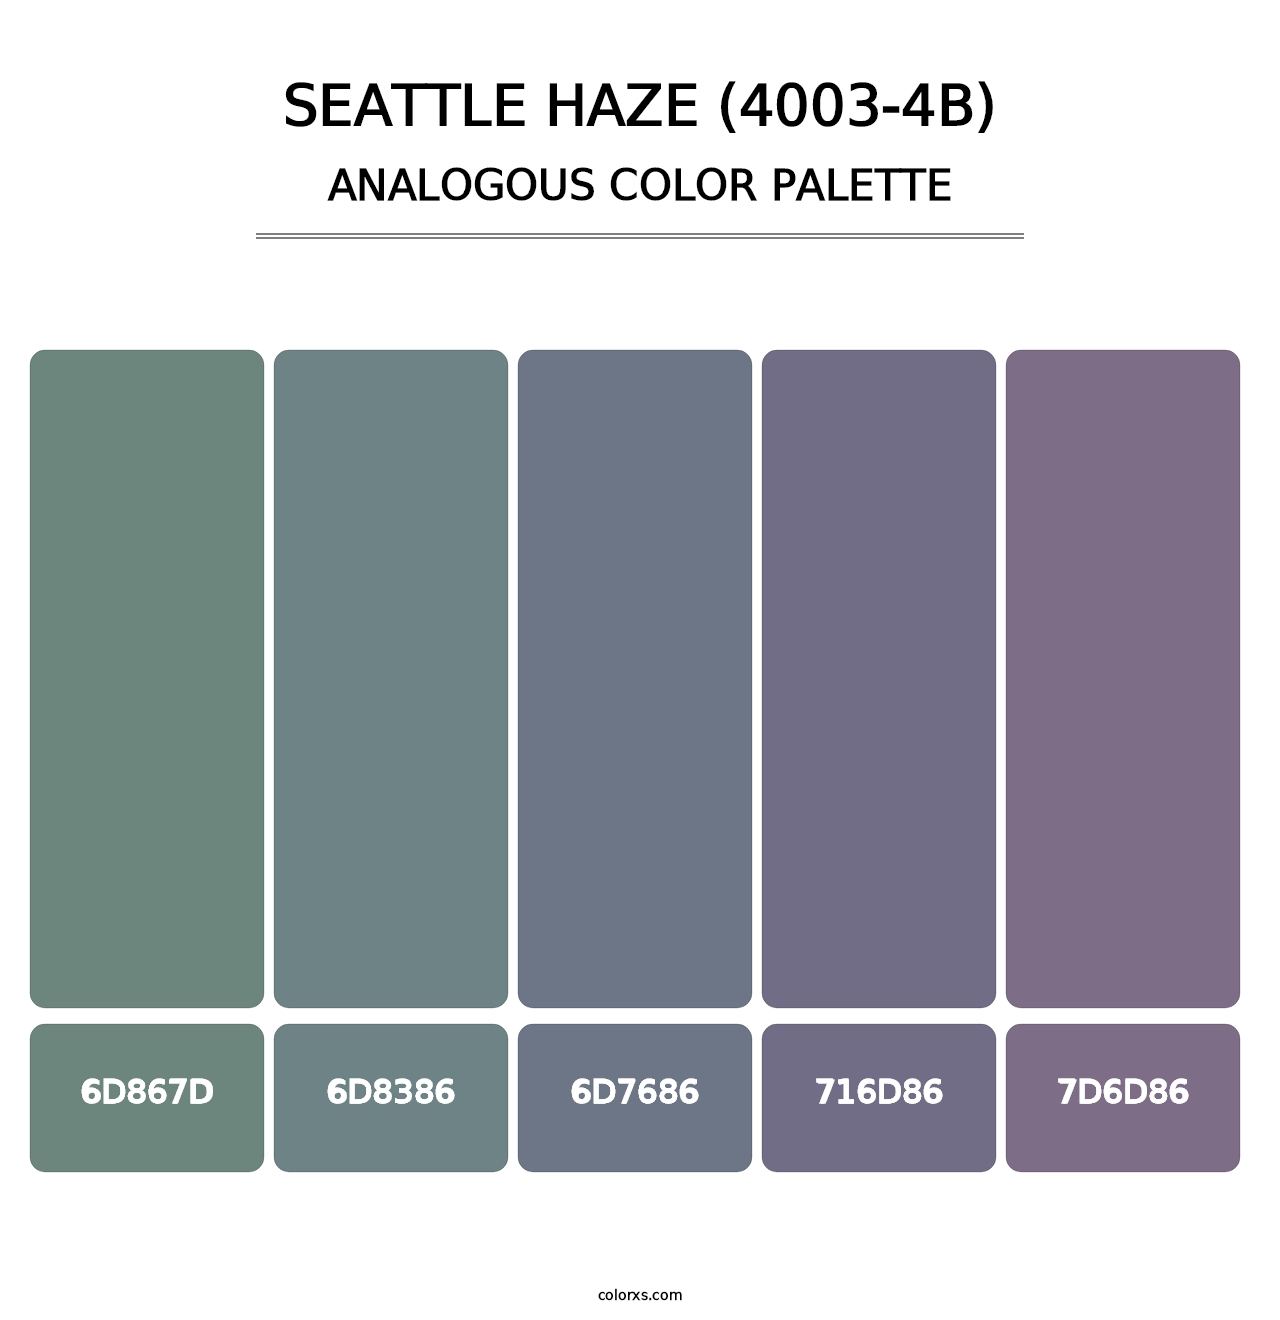 Seattle Haze (4003-4B) - Analogous Color Palette